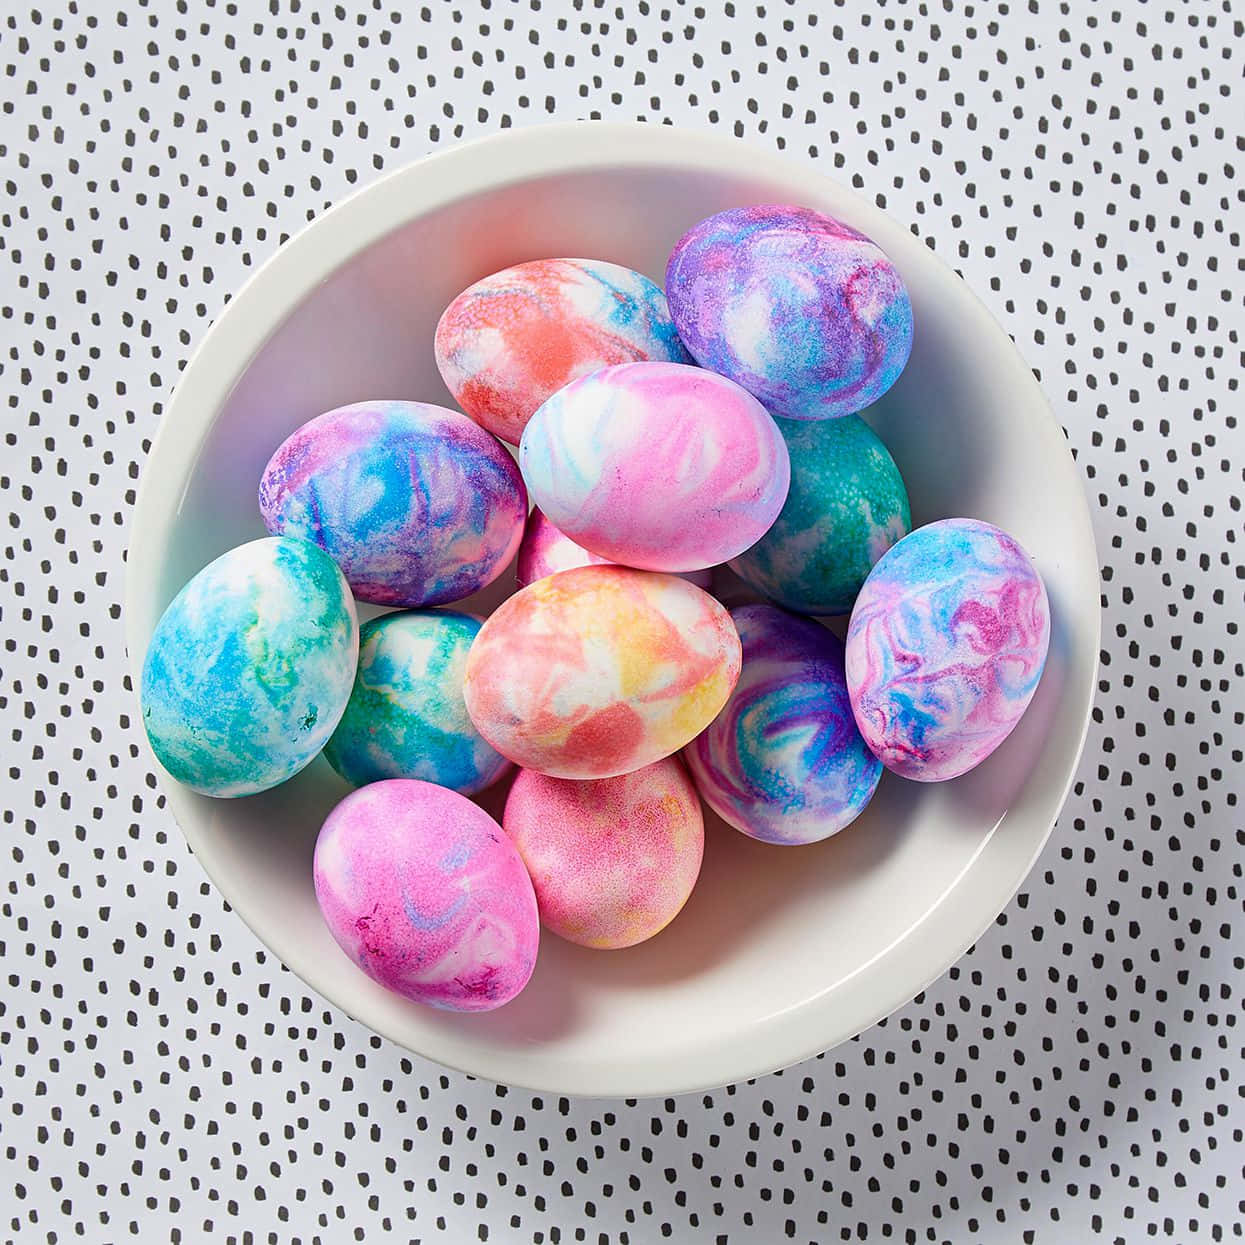 Imagende Diseños De Huevos De Pascua Teñidos